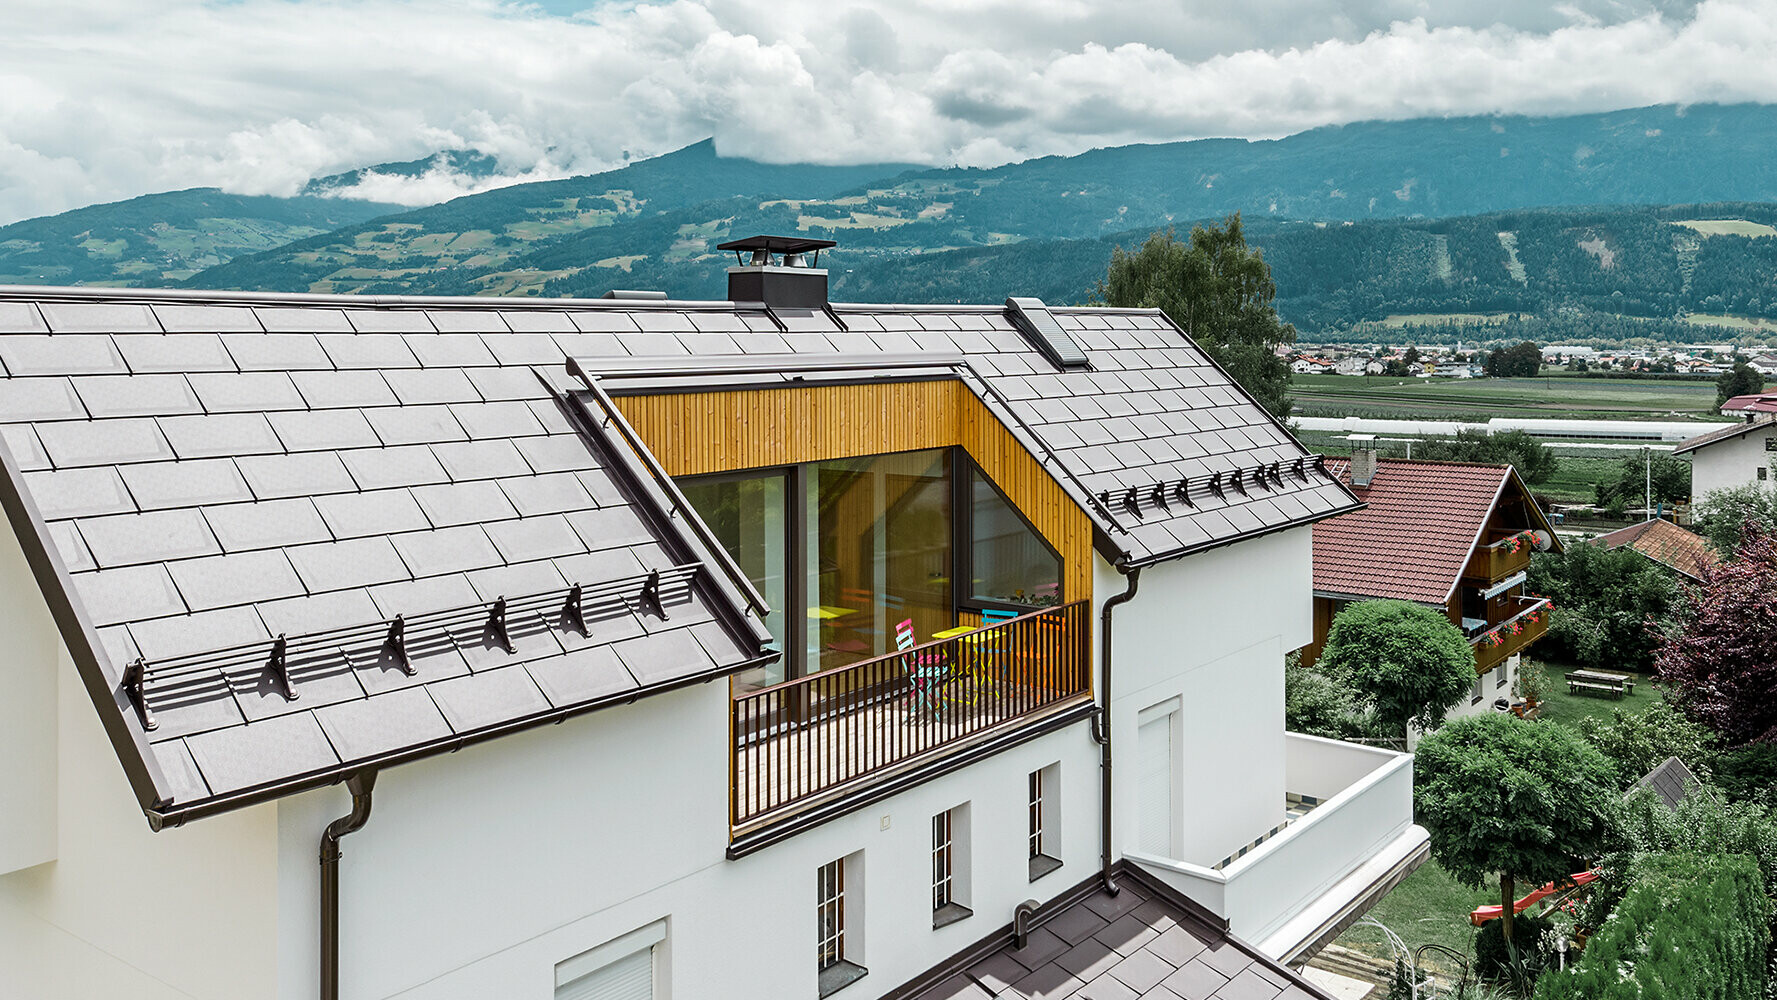 Bolighus tekket med takplater R.16 i nøttebrunt aluminium fra PREFA. Huset har en stor balkong og lys pusset fasade.